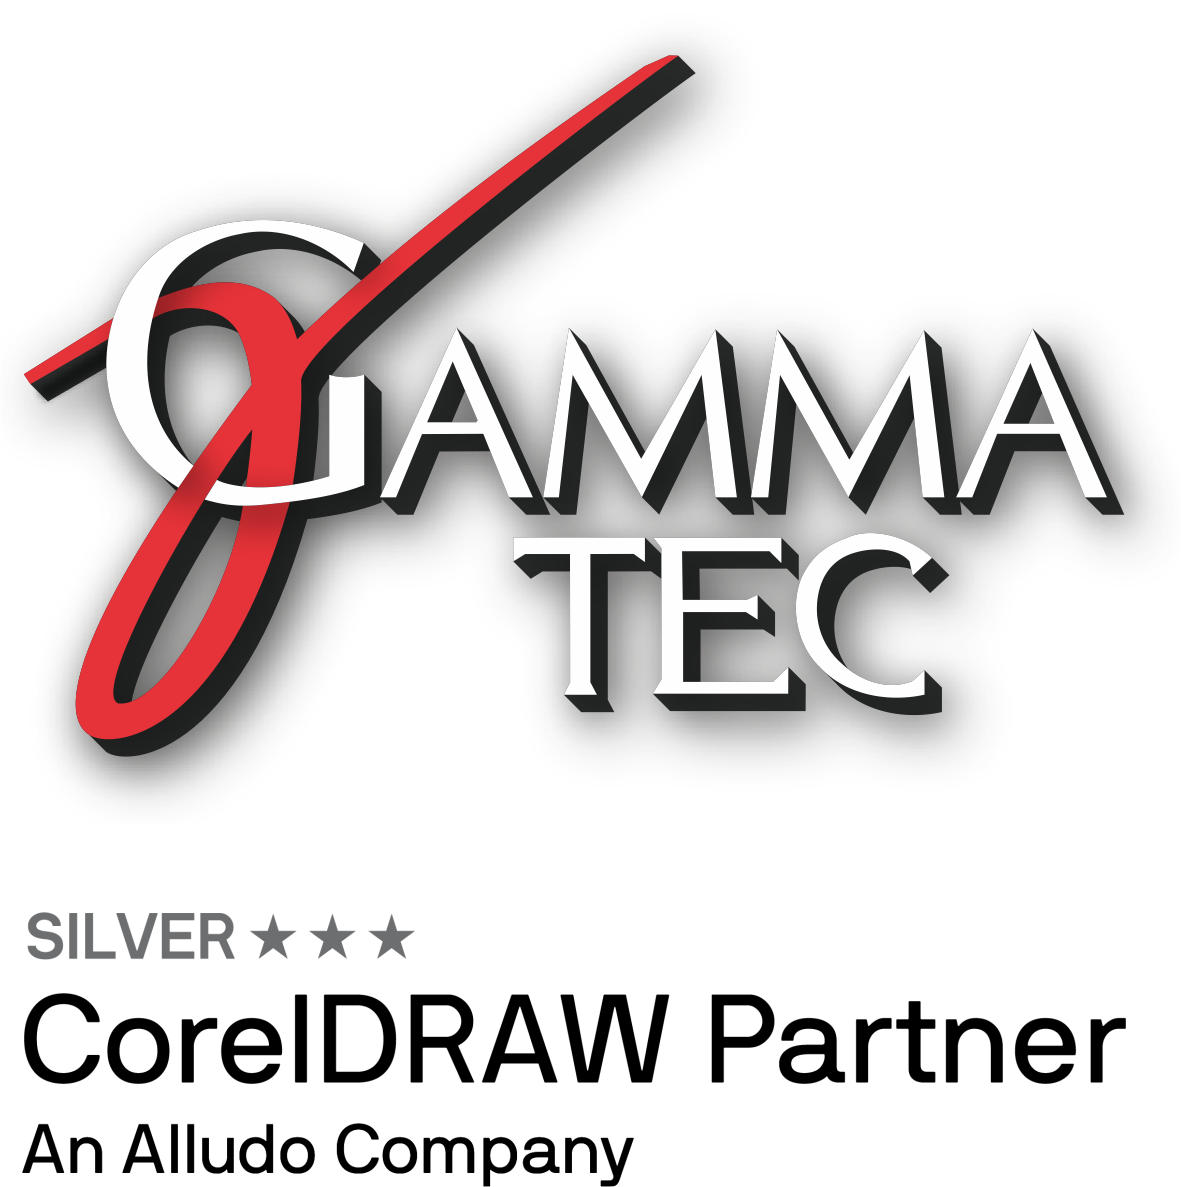 GAMMA-TEC est un partenaire privilégié de CorelDRAW pour la commercialisation et la formation professionnelle.